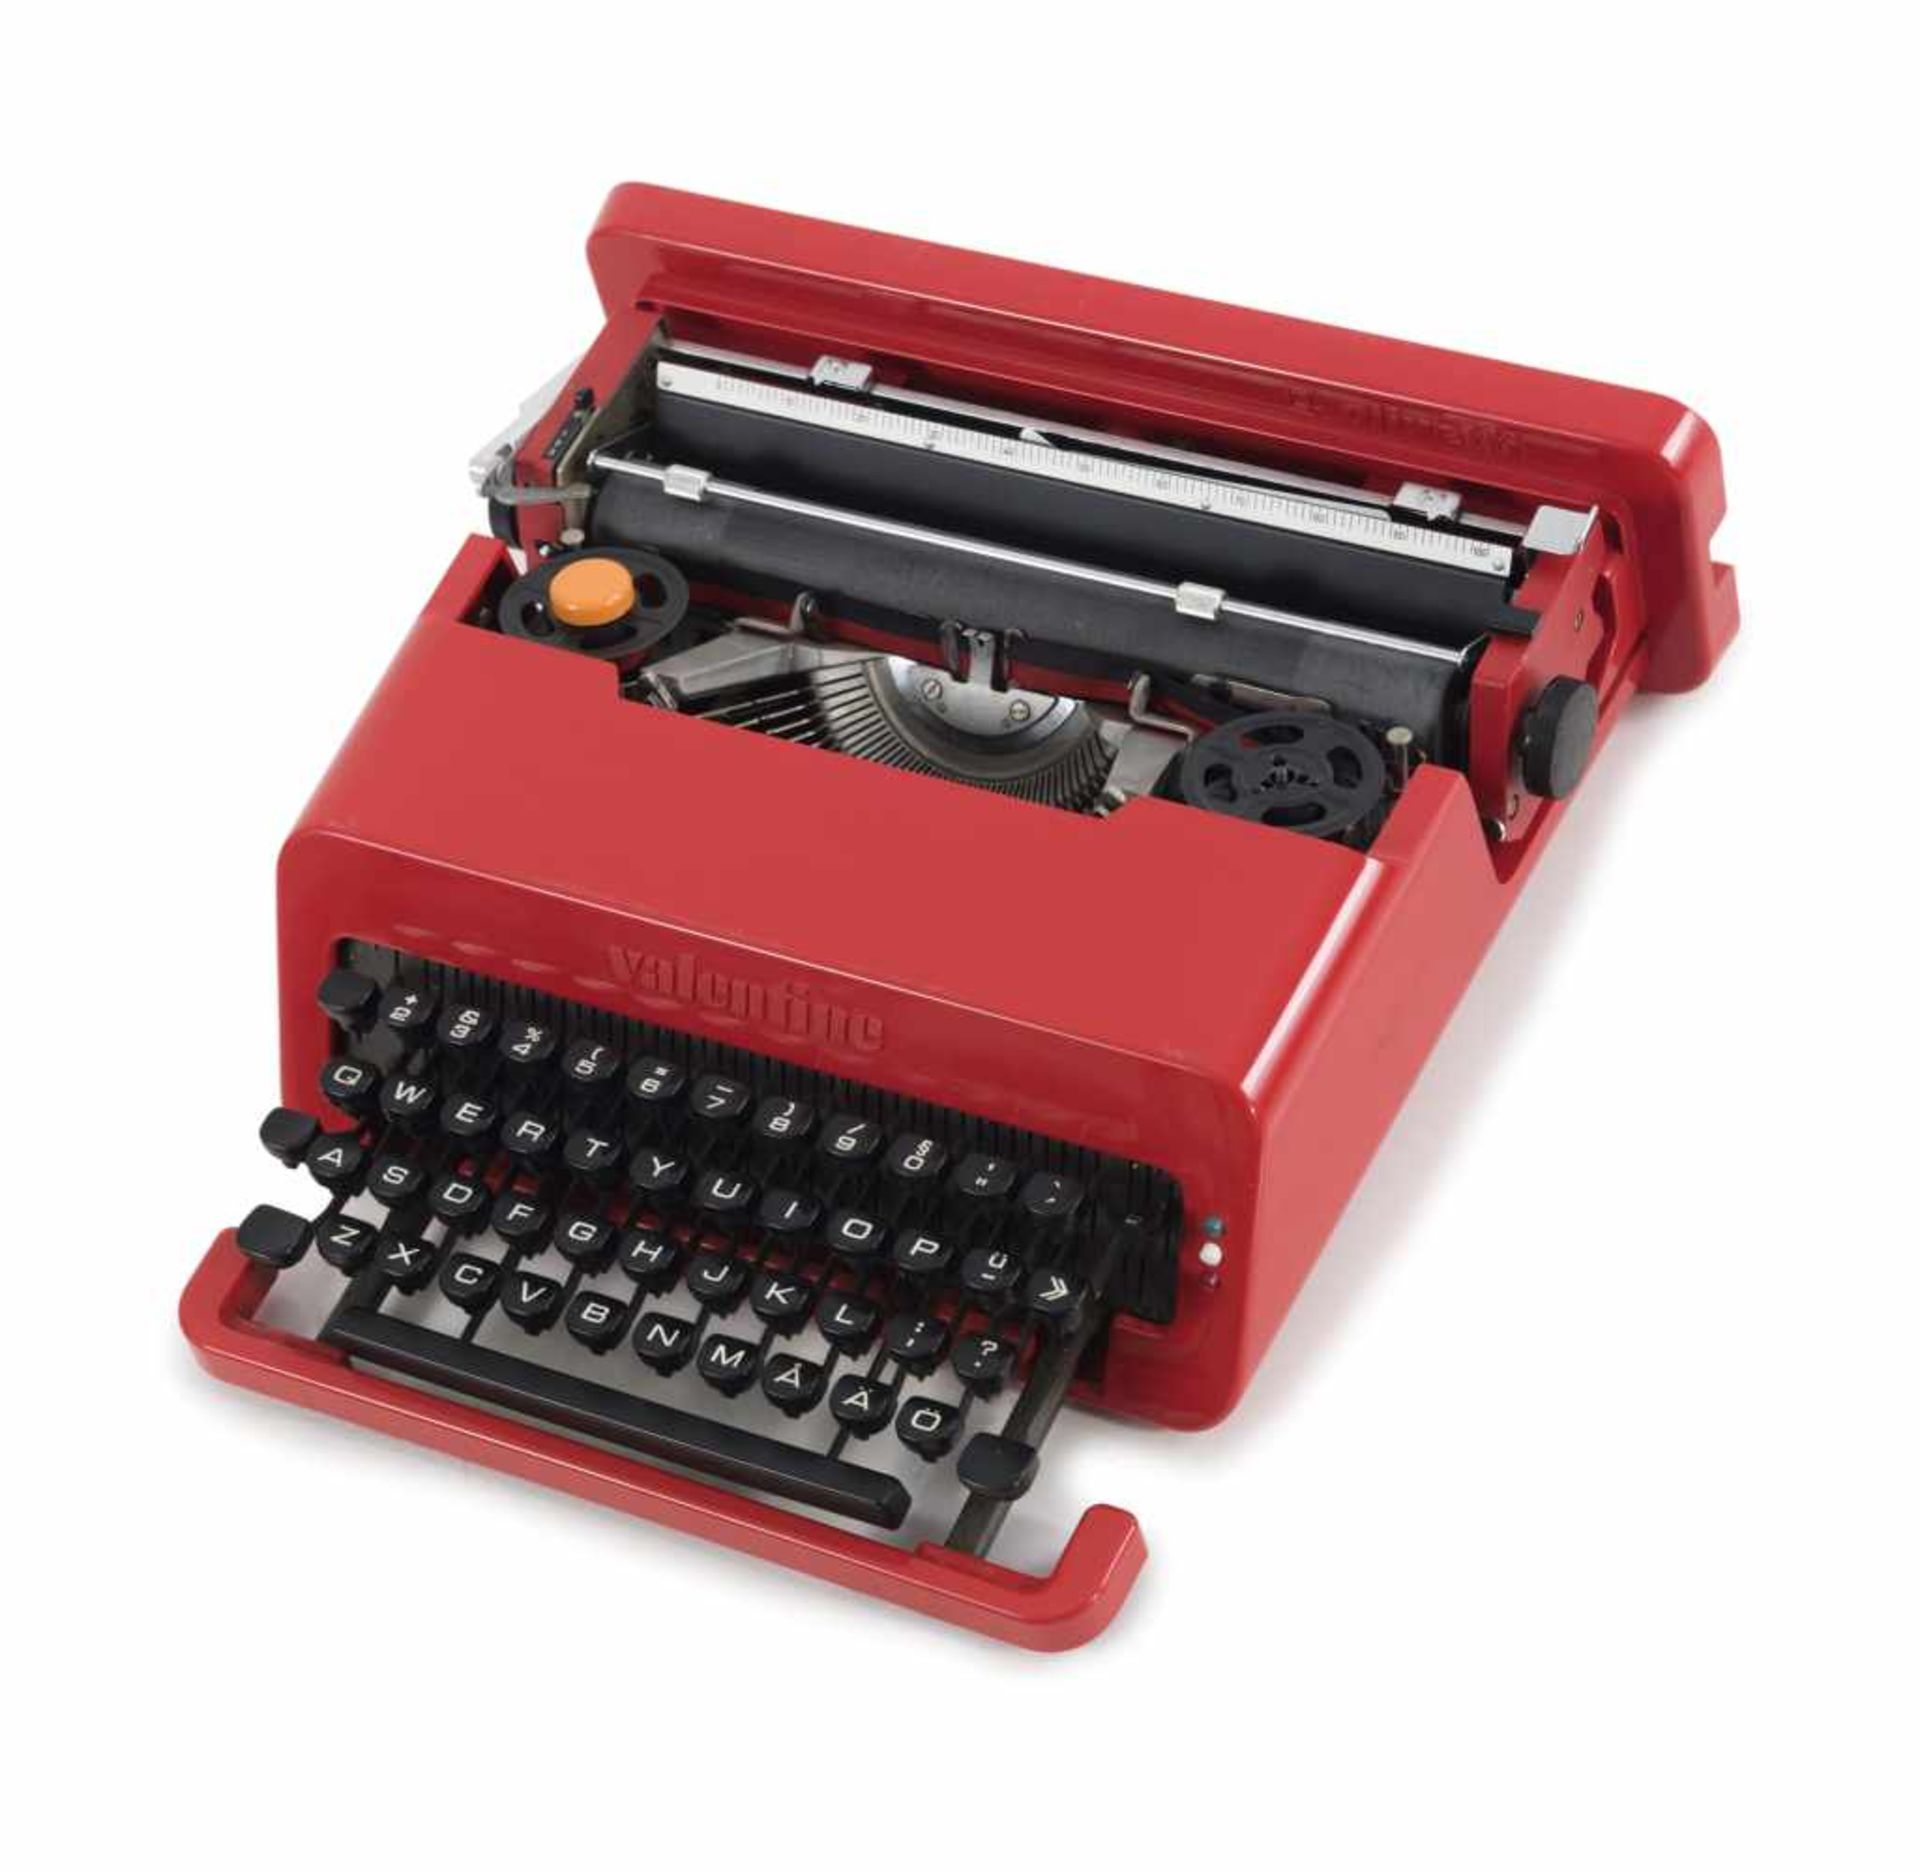 Schreibmaschine 'Valentine S', 1969 Ettore Sottsass H. 11,5 x 35 x 34,2 cm. Olivetti, Ivrea. Rotes